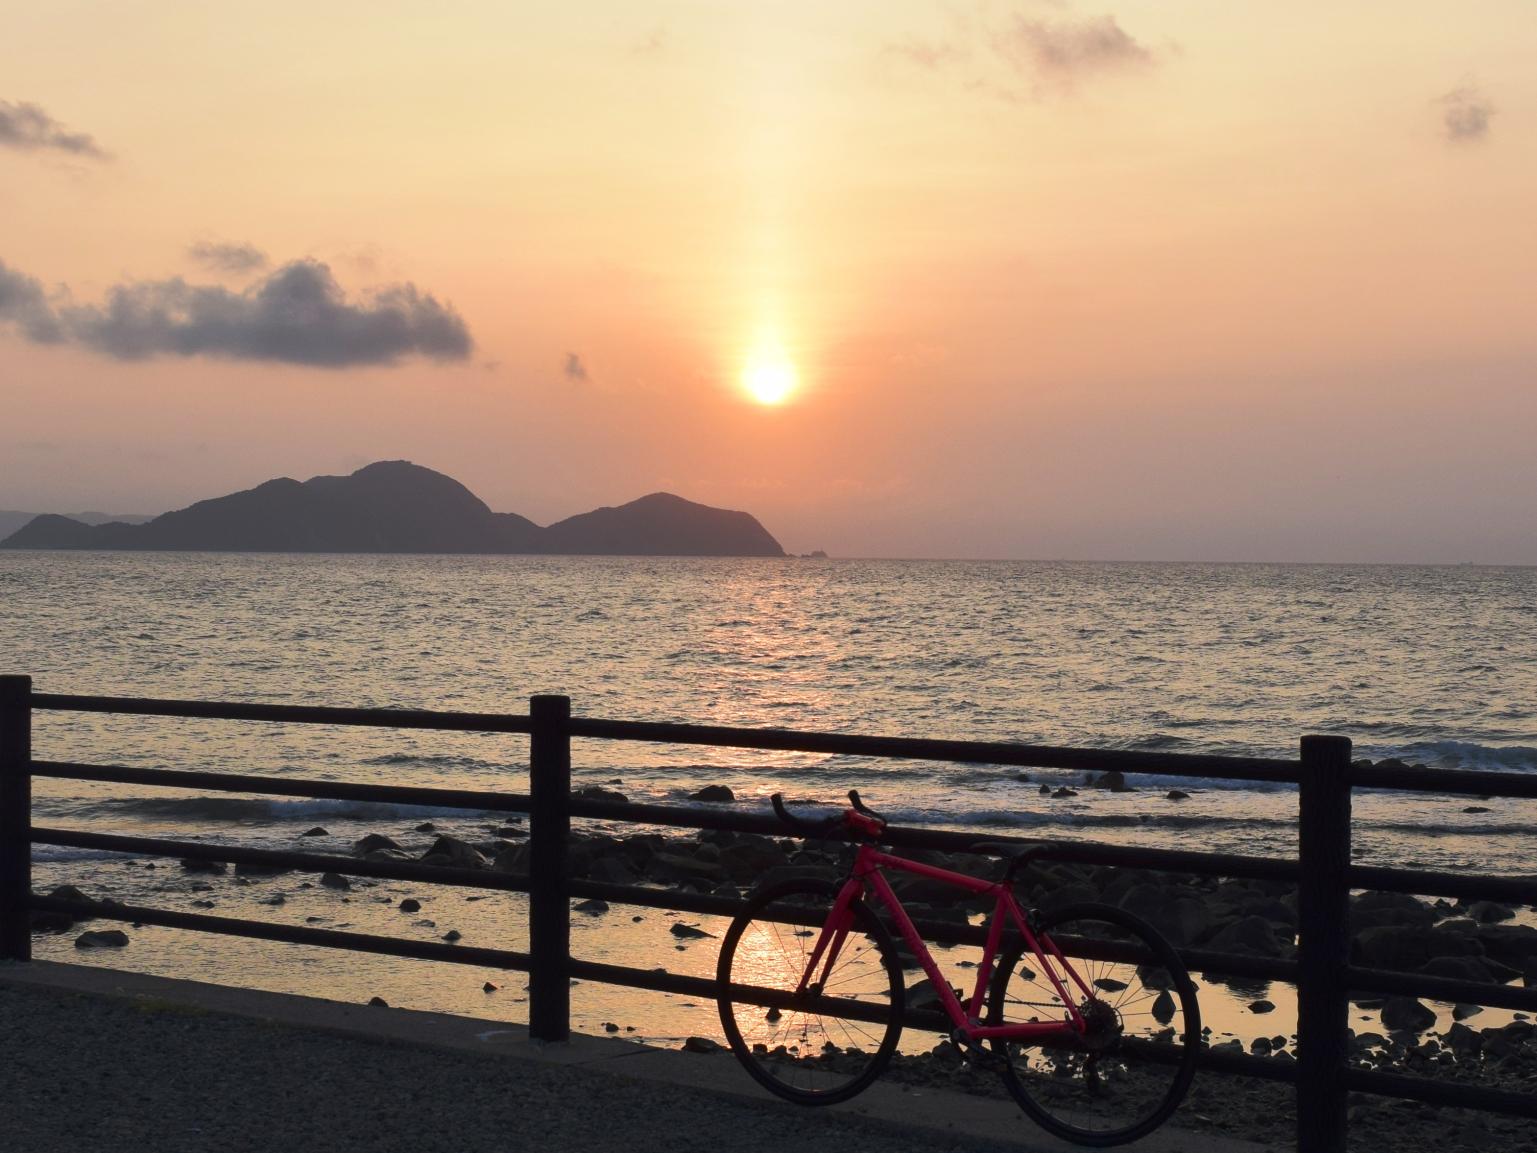 夕阳十分美丽的运贺·宗像自行车道-1